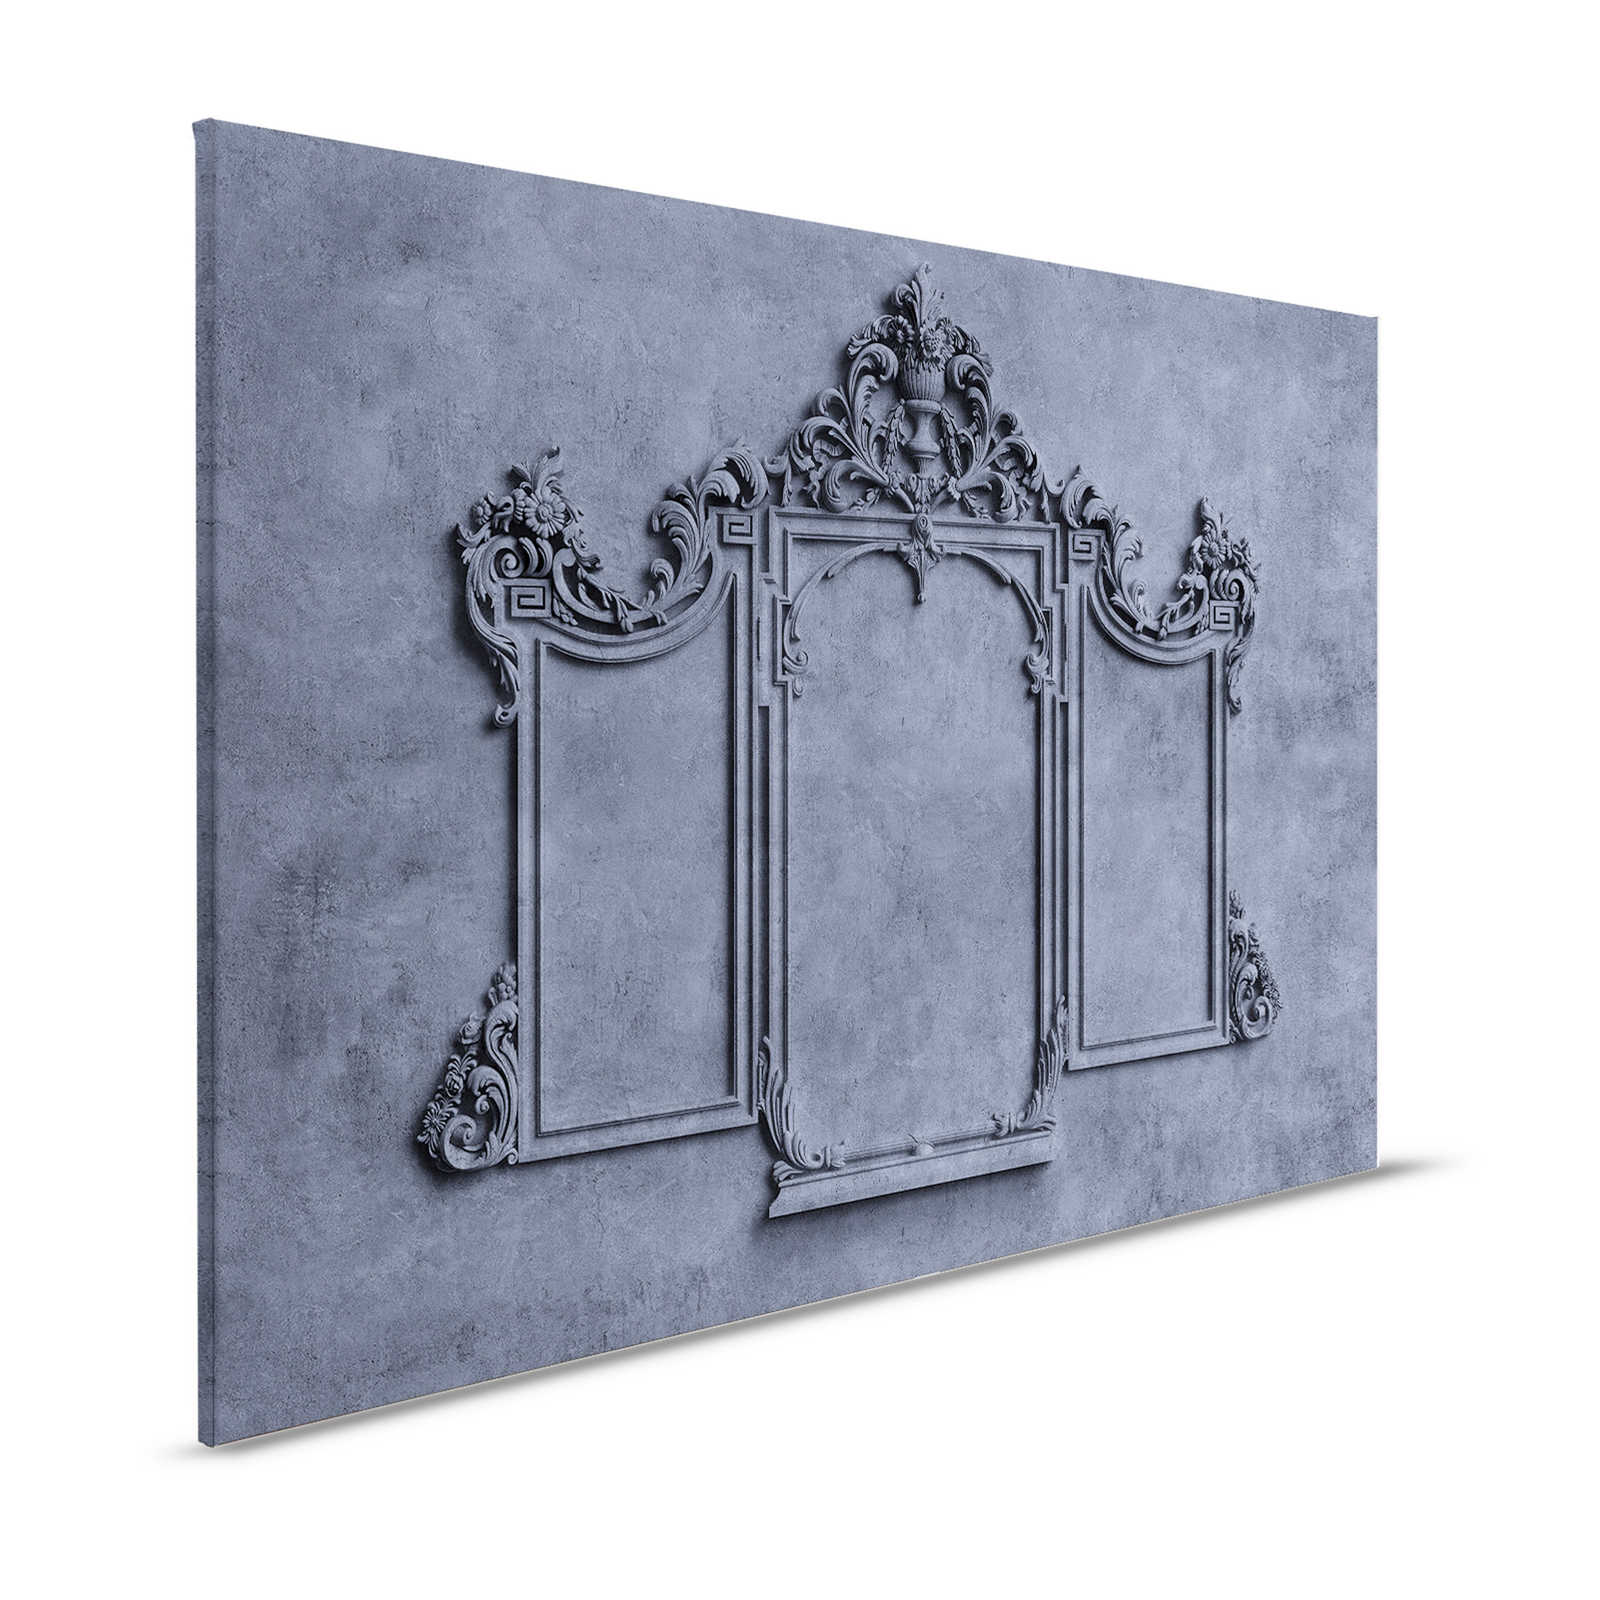 Lyon 3 - Quadro su tela 3D con cornice in stucco e intonaco blu - 1,20 m x 0,80 m
